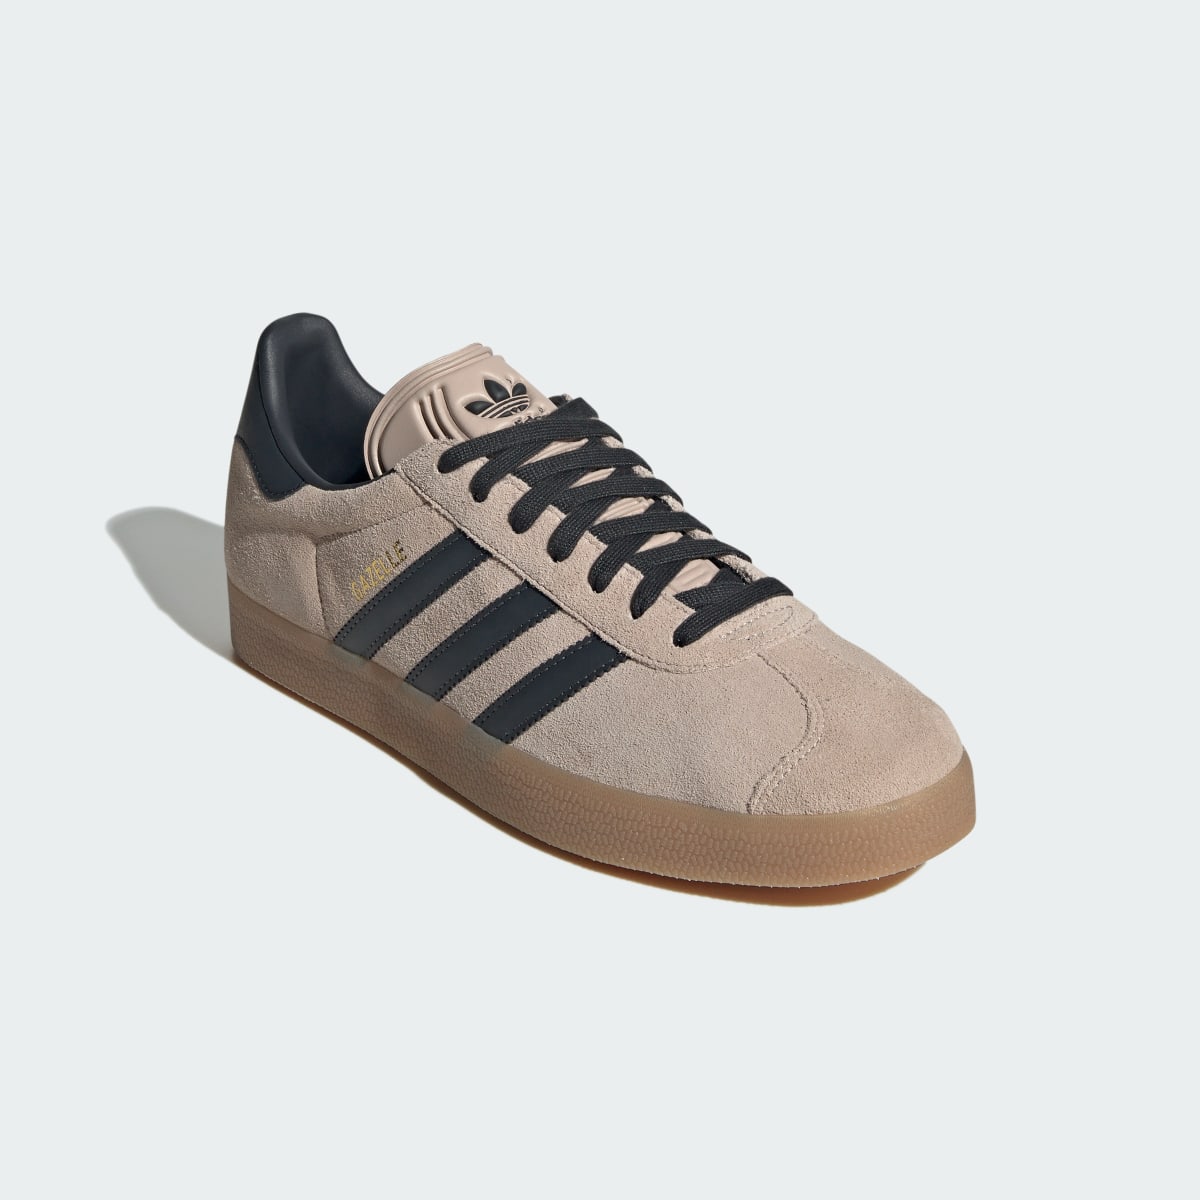 Adidas Gazelle Shoes. 5